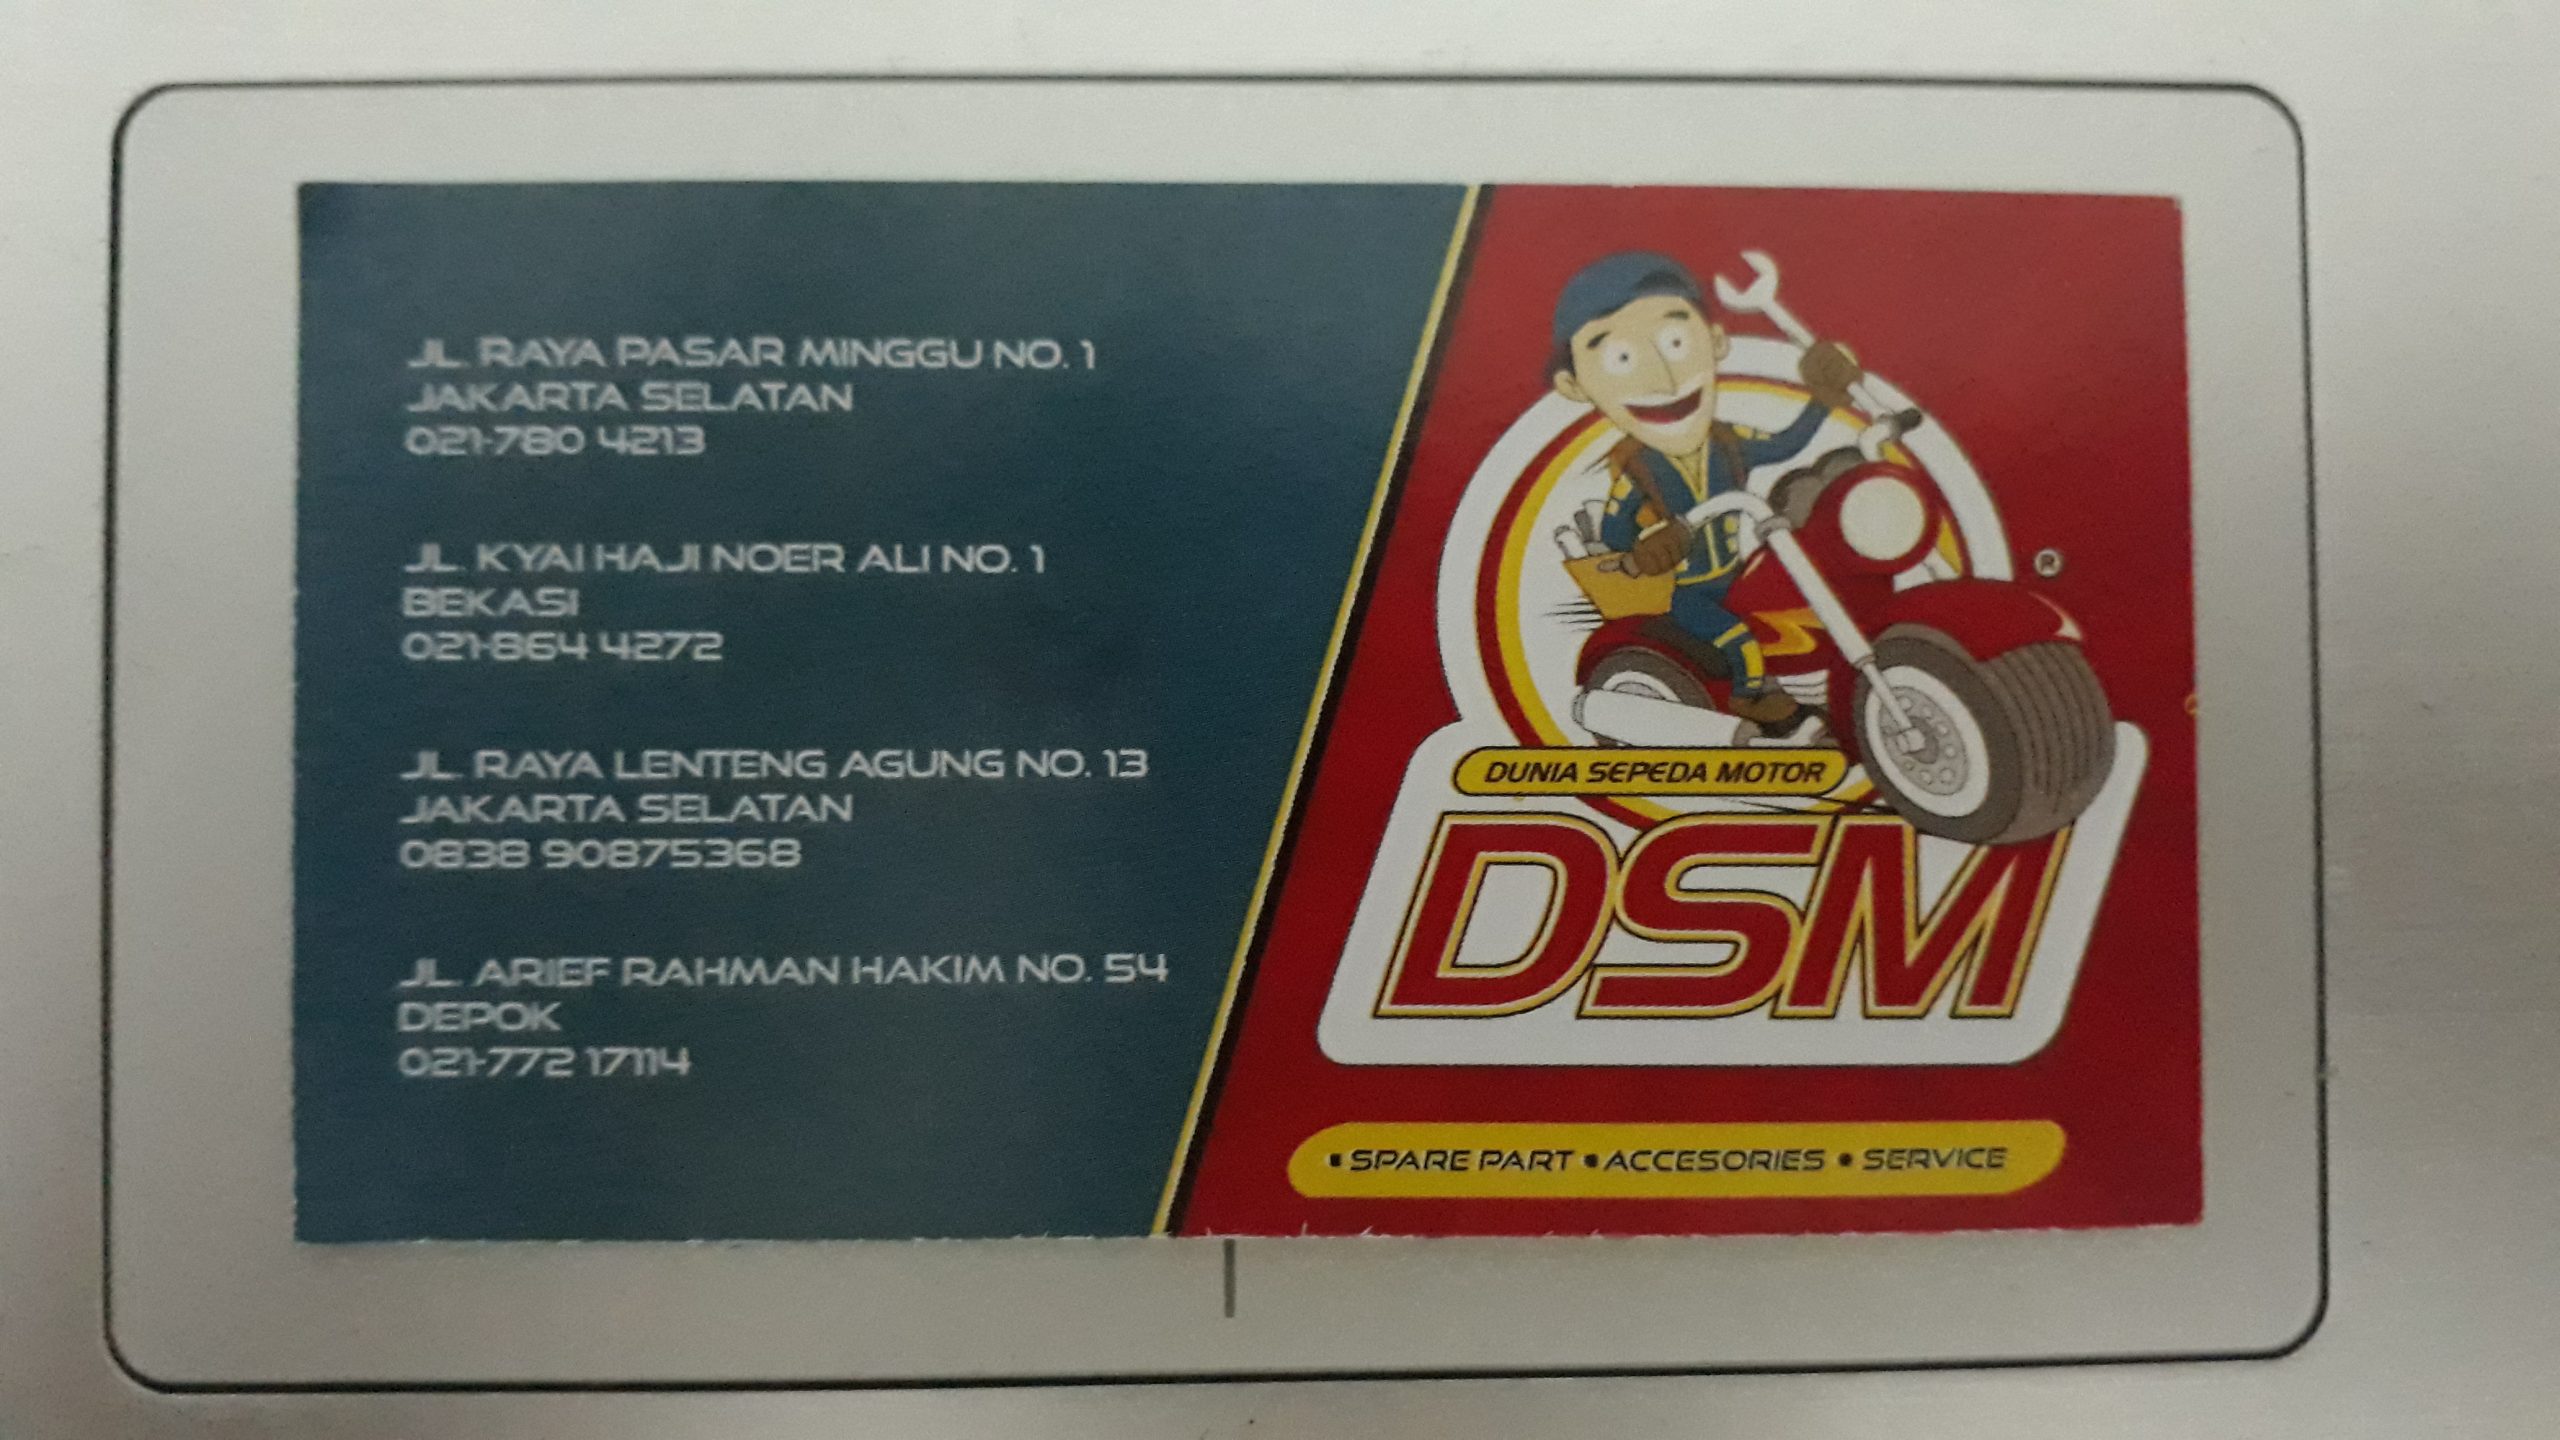 Daftar Cabang Bengkel Motor DSM